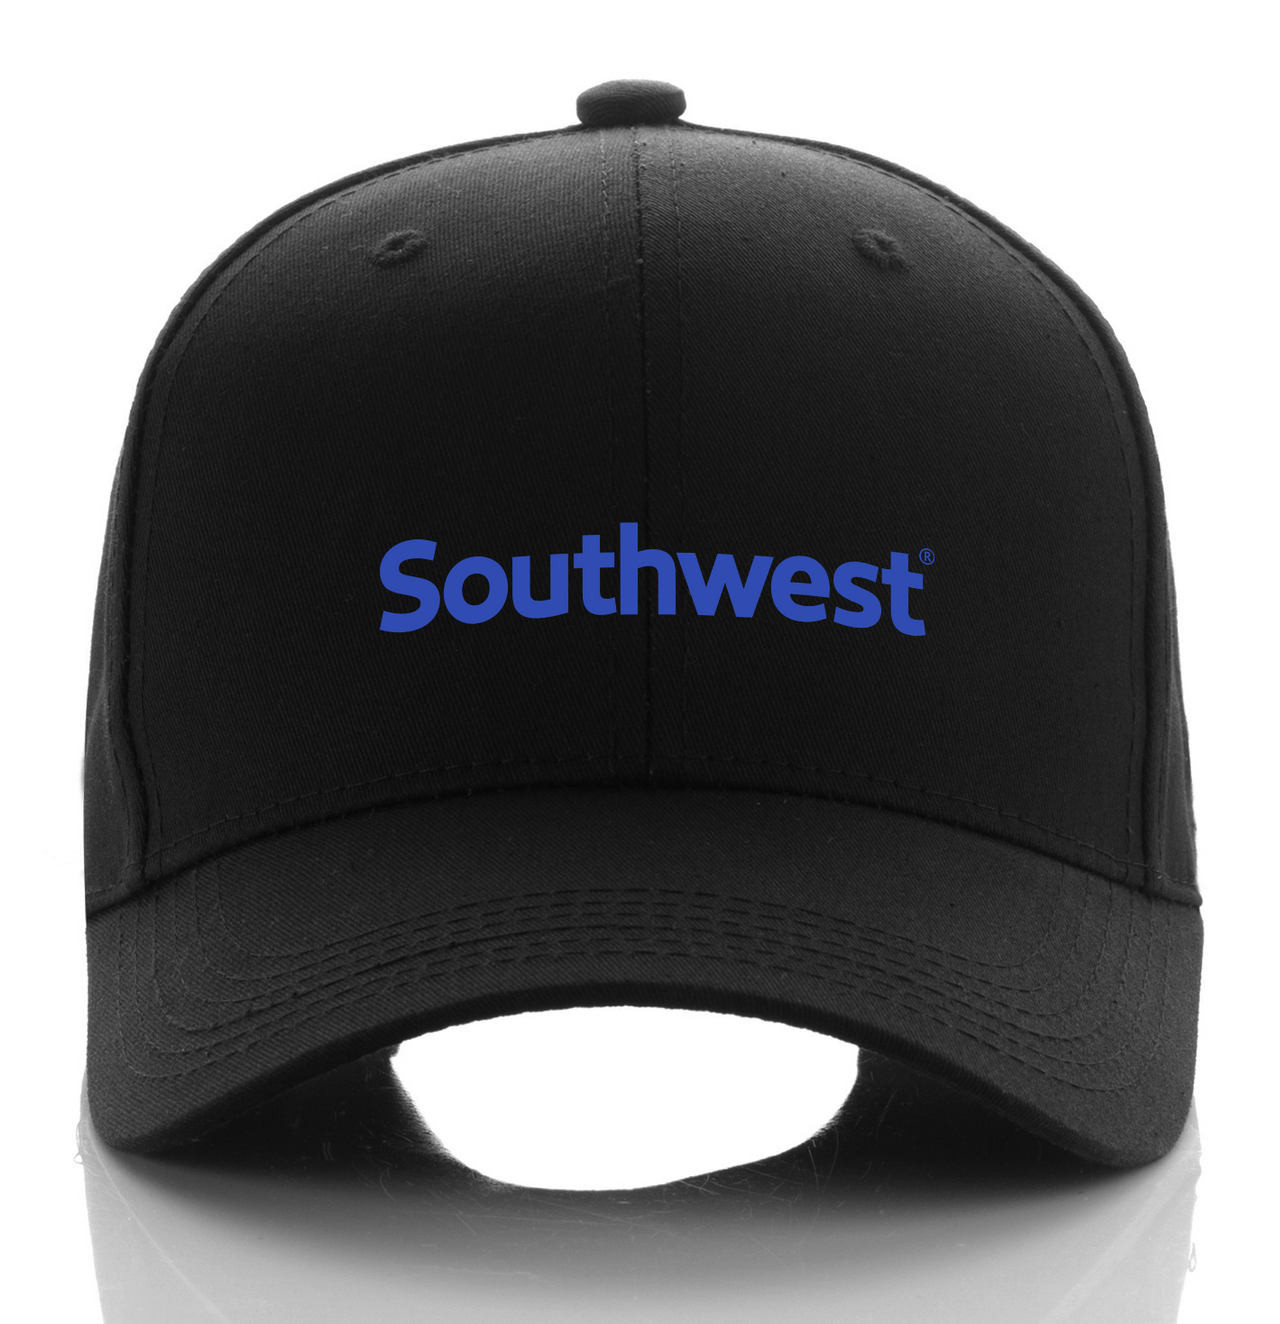 SOUTHWEST AIRLINE DESIGNED CAP